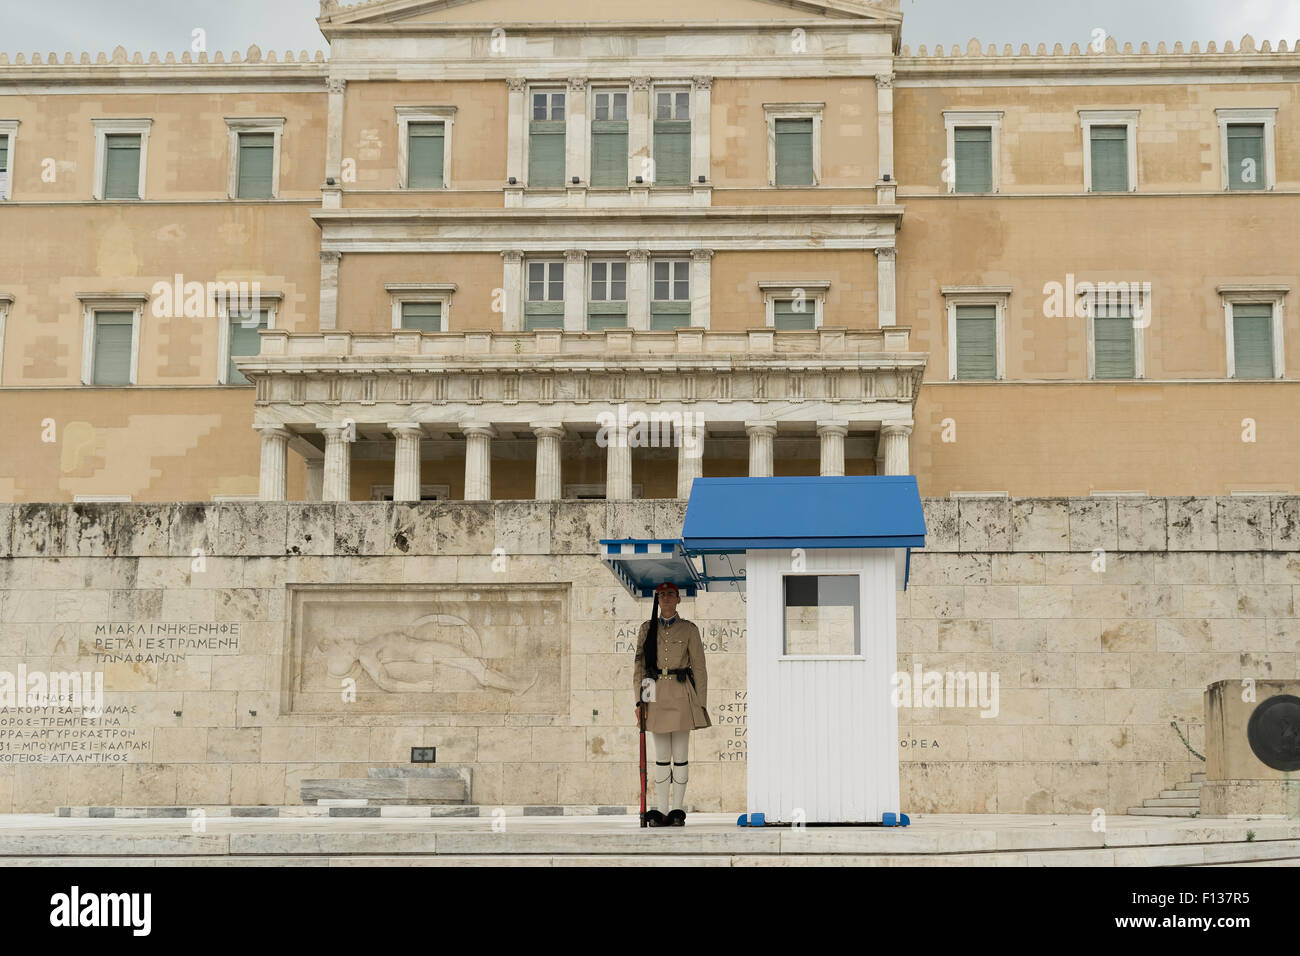 Athènes, Grèce, 30 mai 2015. Evzone en position debout gardant le parlement de la Grèce. Banque D'Images